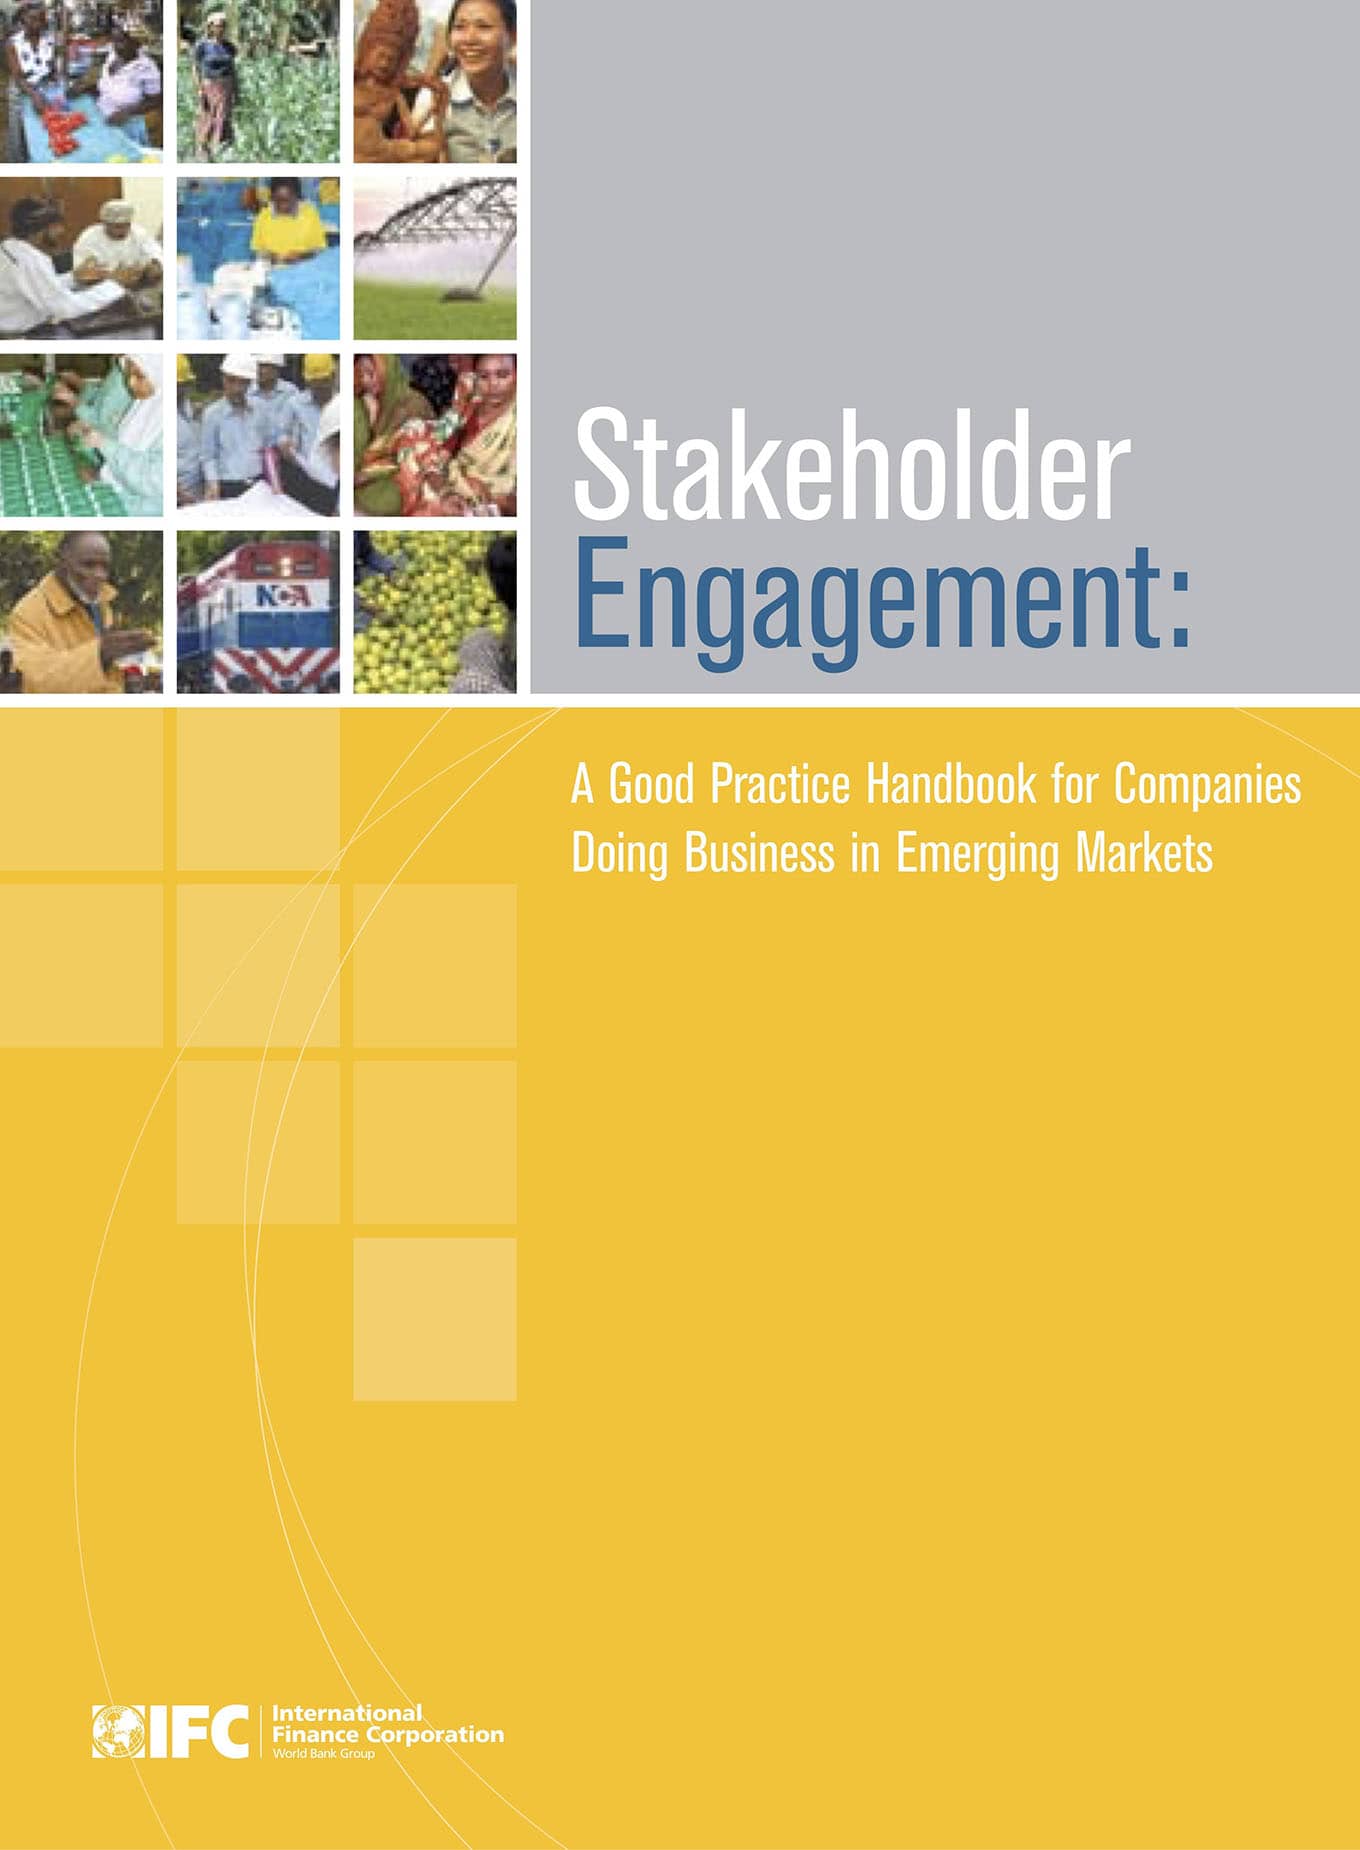 Relaciones con la comunidad y otros actores sociales: Manual de prácticas recomendadas para las empresas que hacen negocios en mercados emergentes (IFC, 2007)